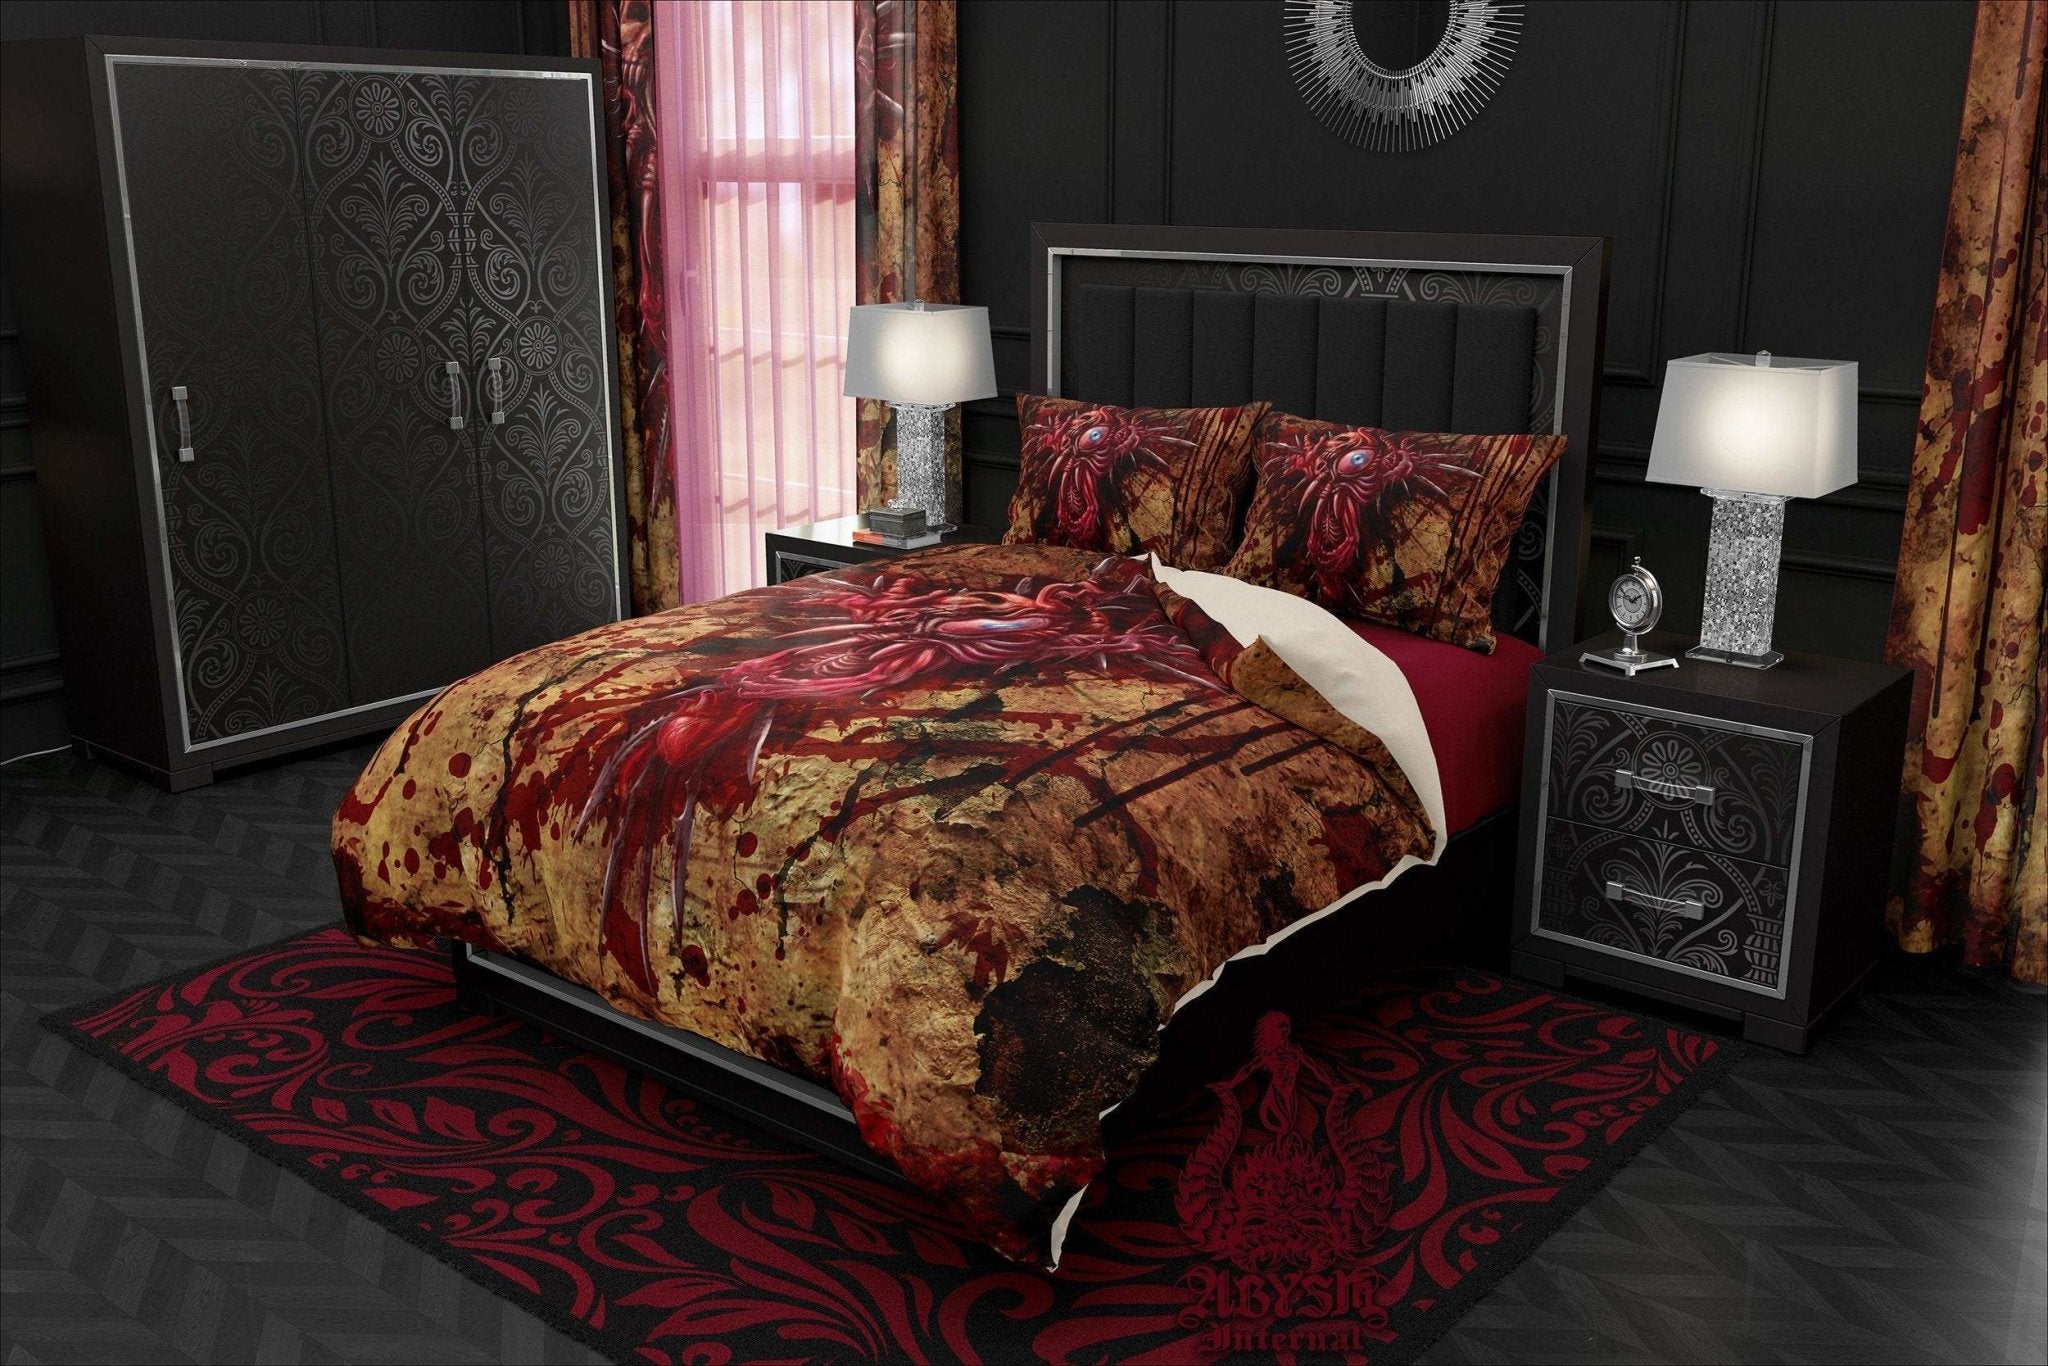 Horror Bedding Set, Comforter or Duvet, Halloween Bed Cover, Bedroom Decor,  King, Queen & Twin Size - Gore Cross, Dark Grunge